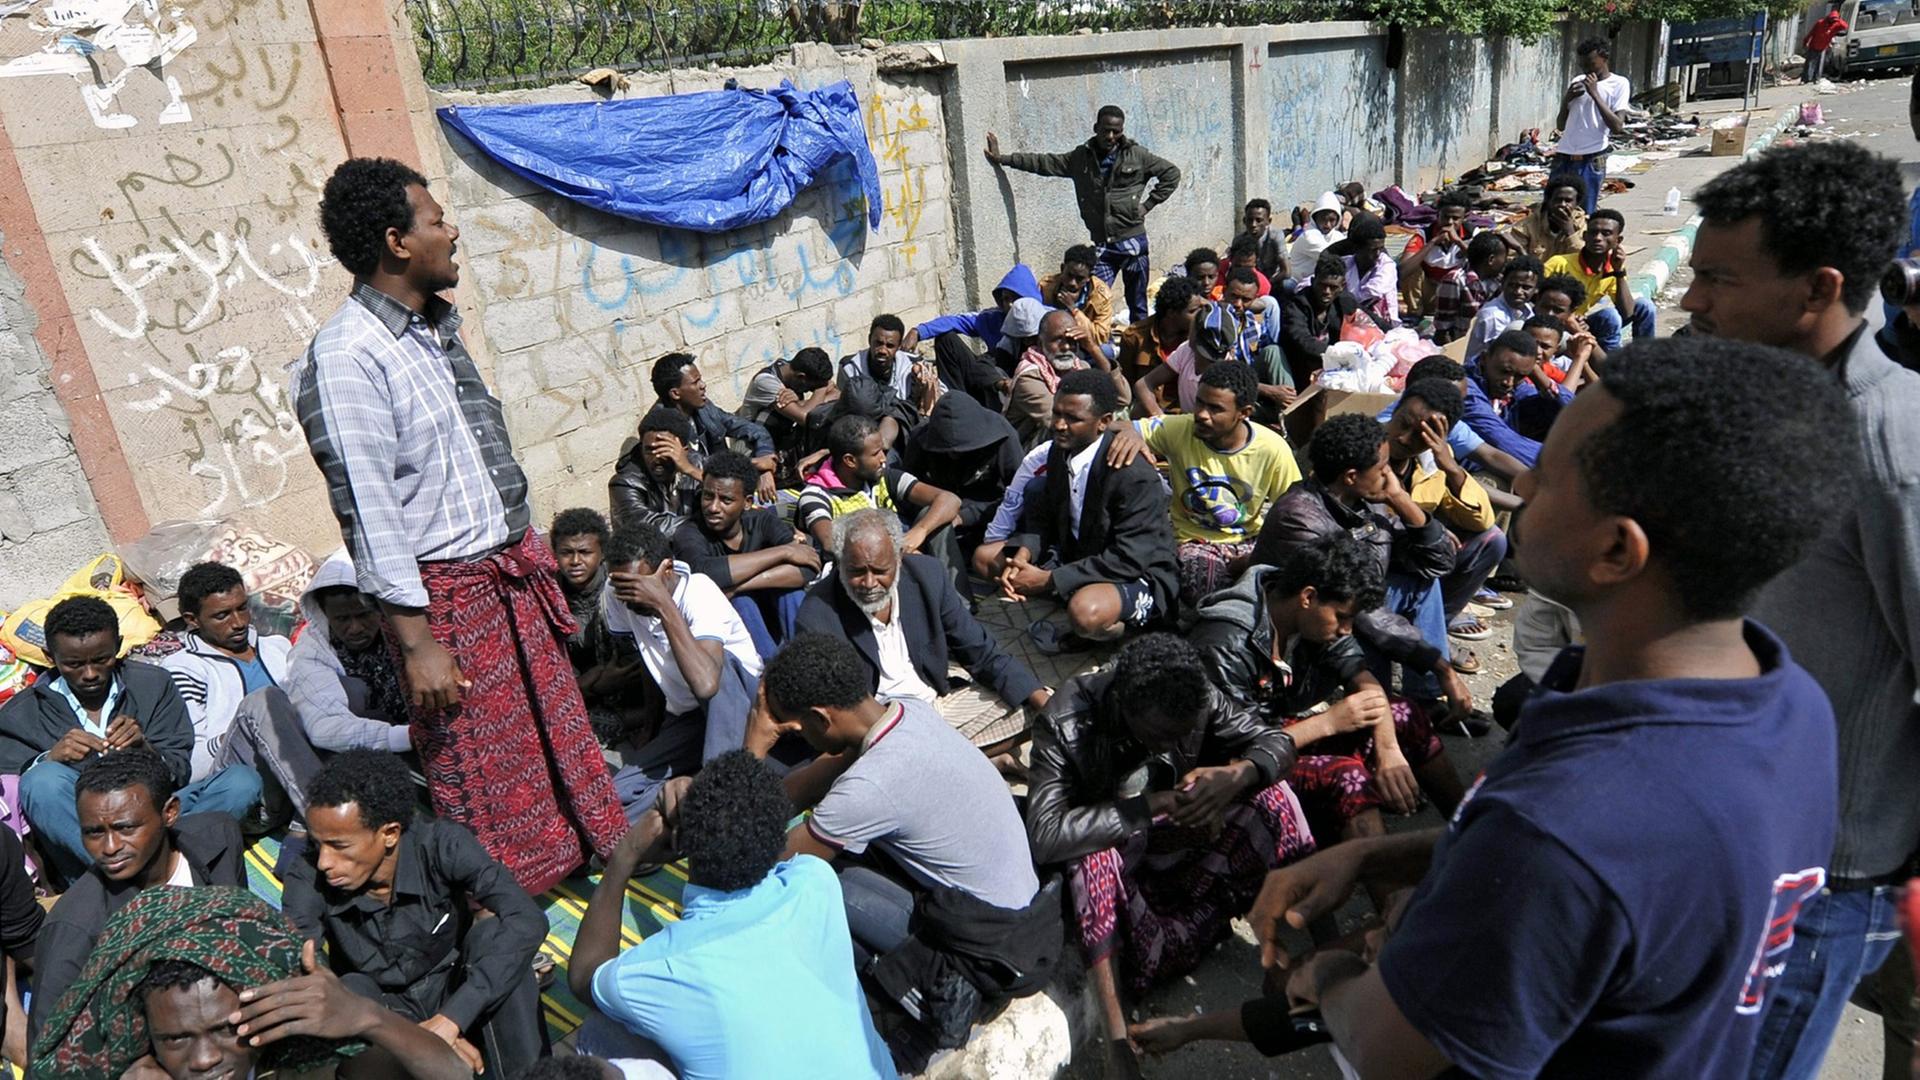 Eritreische Flüchtlinge warten vor eiem UN-Flüchtlingslager in Sana, Jemen, auf Hilfe.